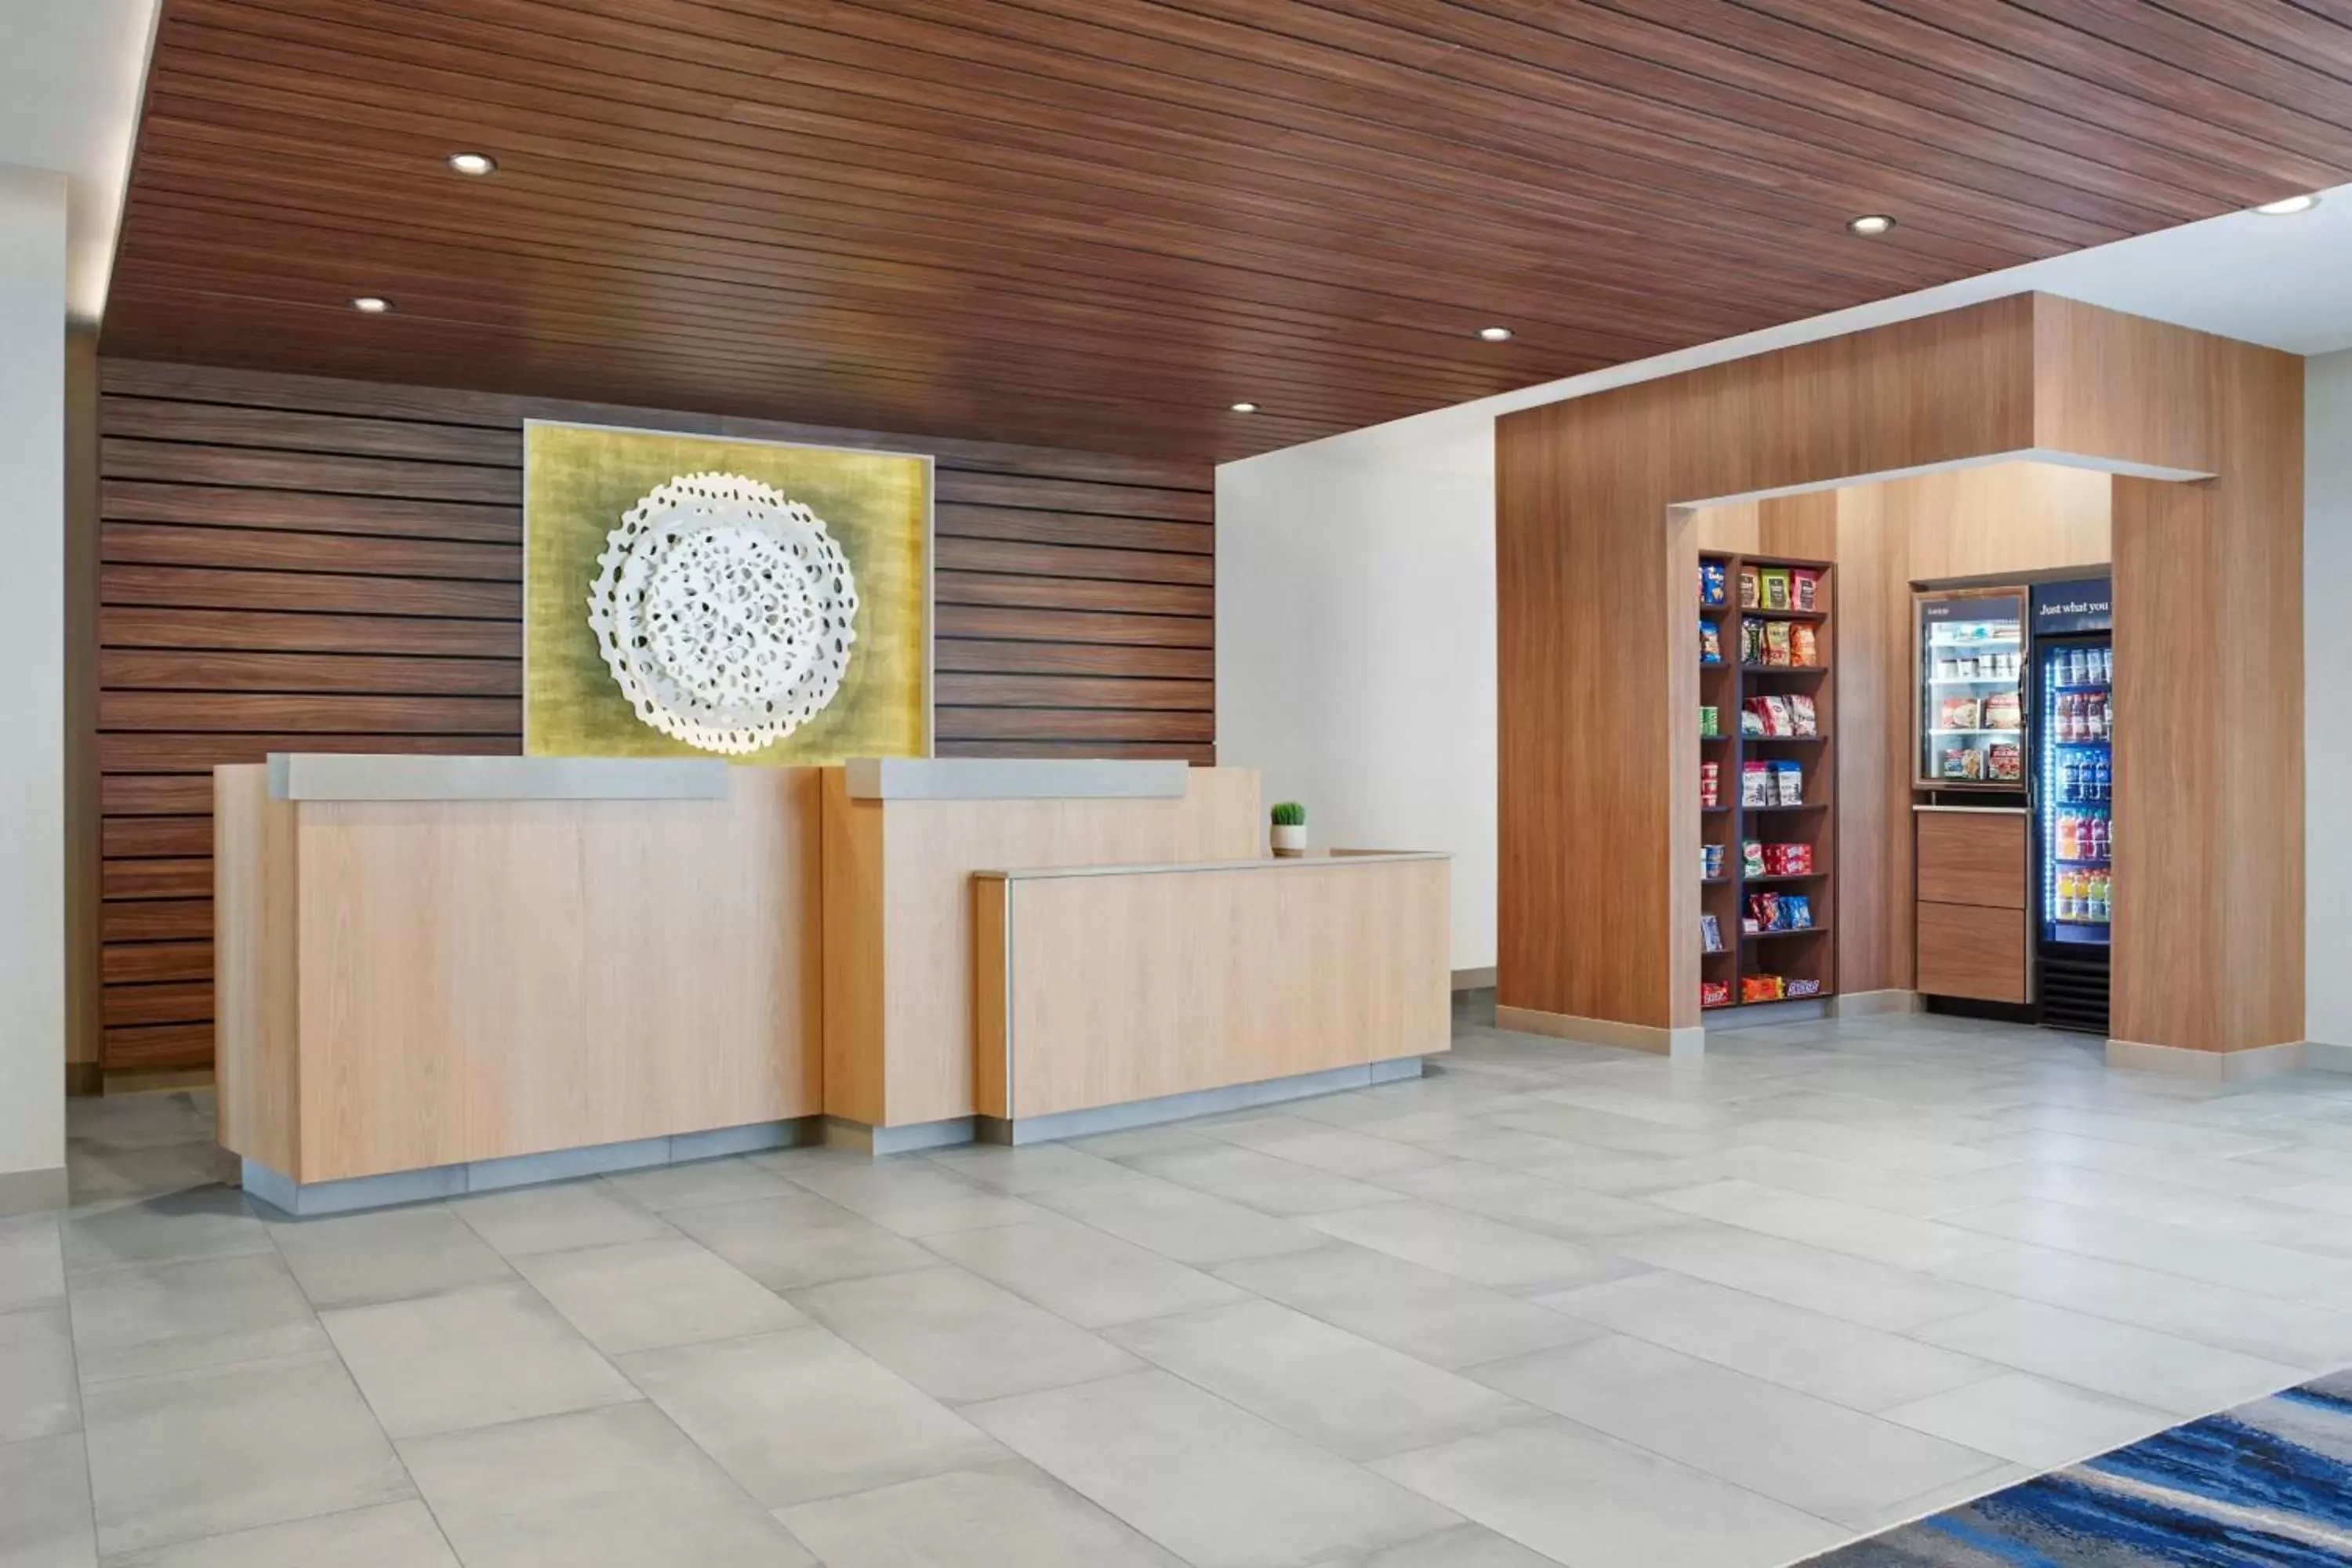 Lobby or reception, Lobby/Reception in Fairfield by Marriott Inn & Suites San Antonio Medical Center